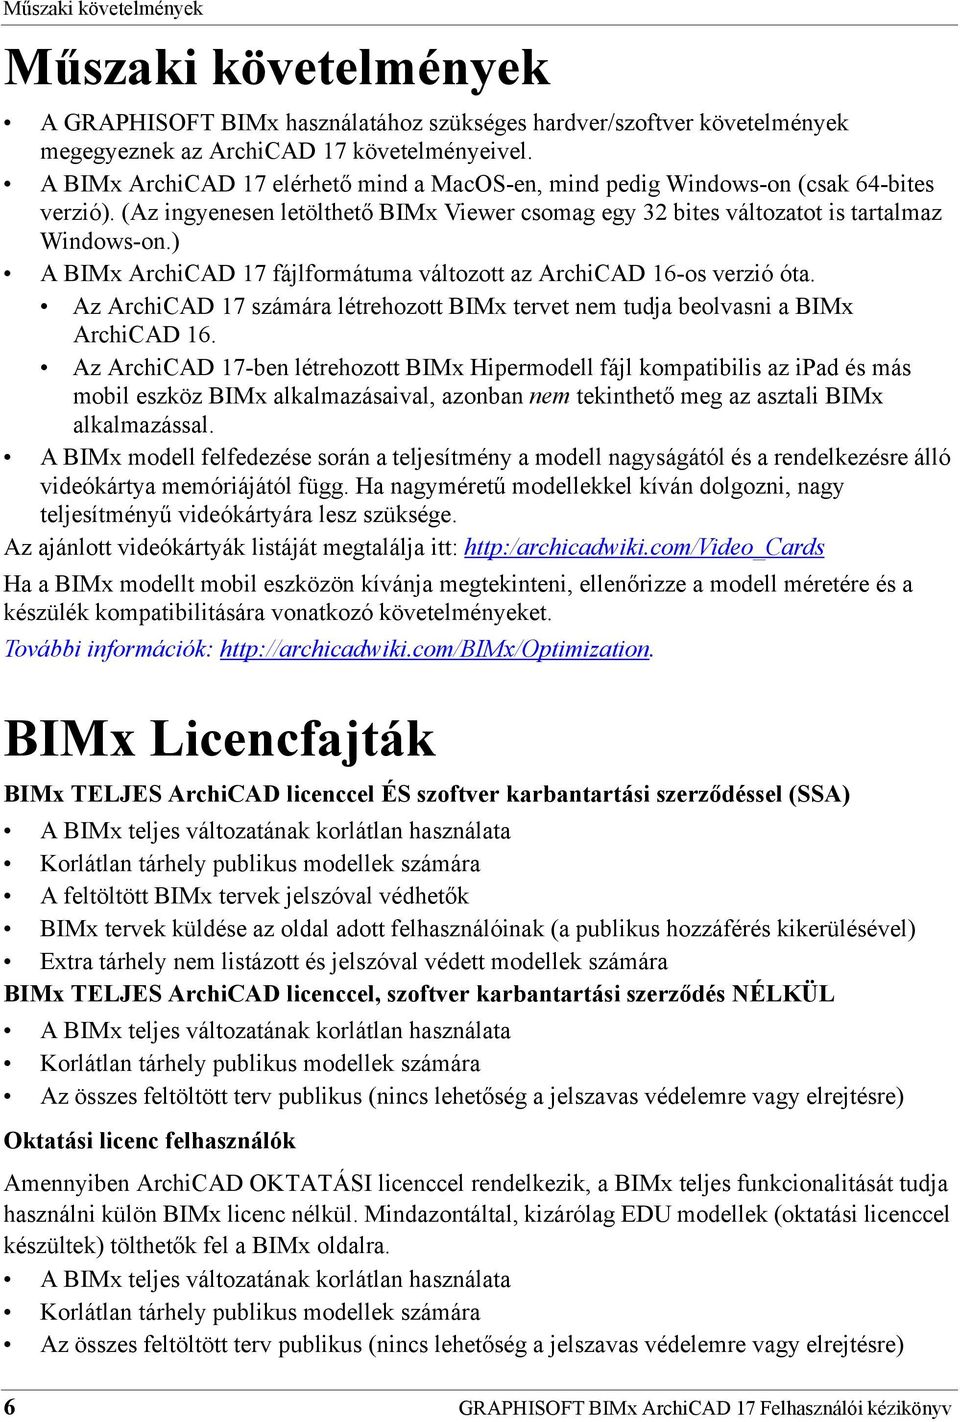 GRAPHISOFT BIMx ArchiCAD 17 Felhasználói kézikönyv - PDF Ingyenes letöltés